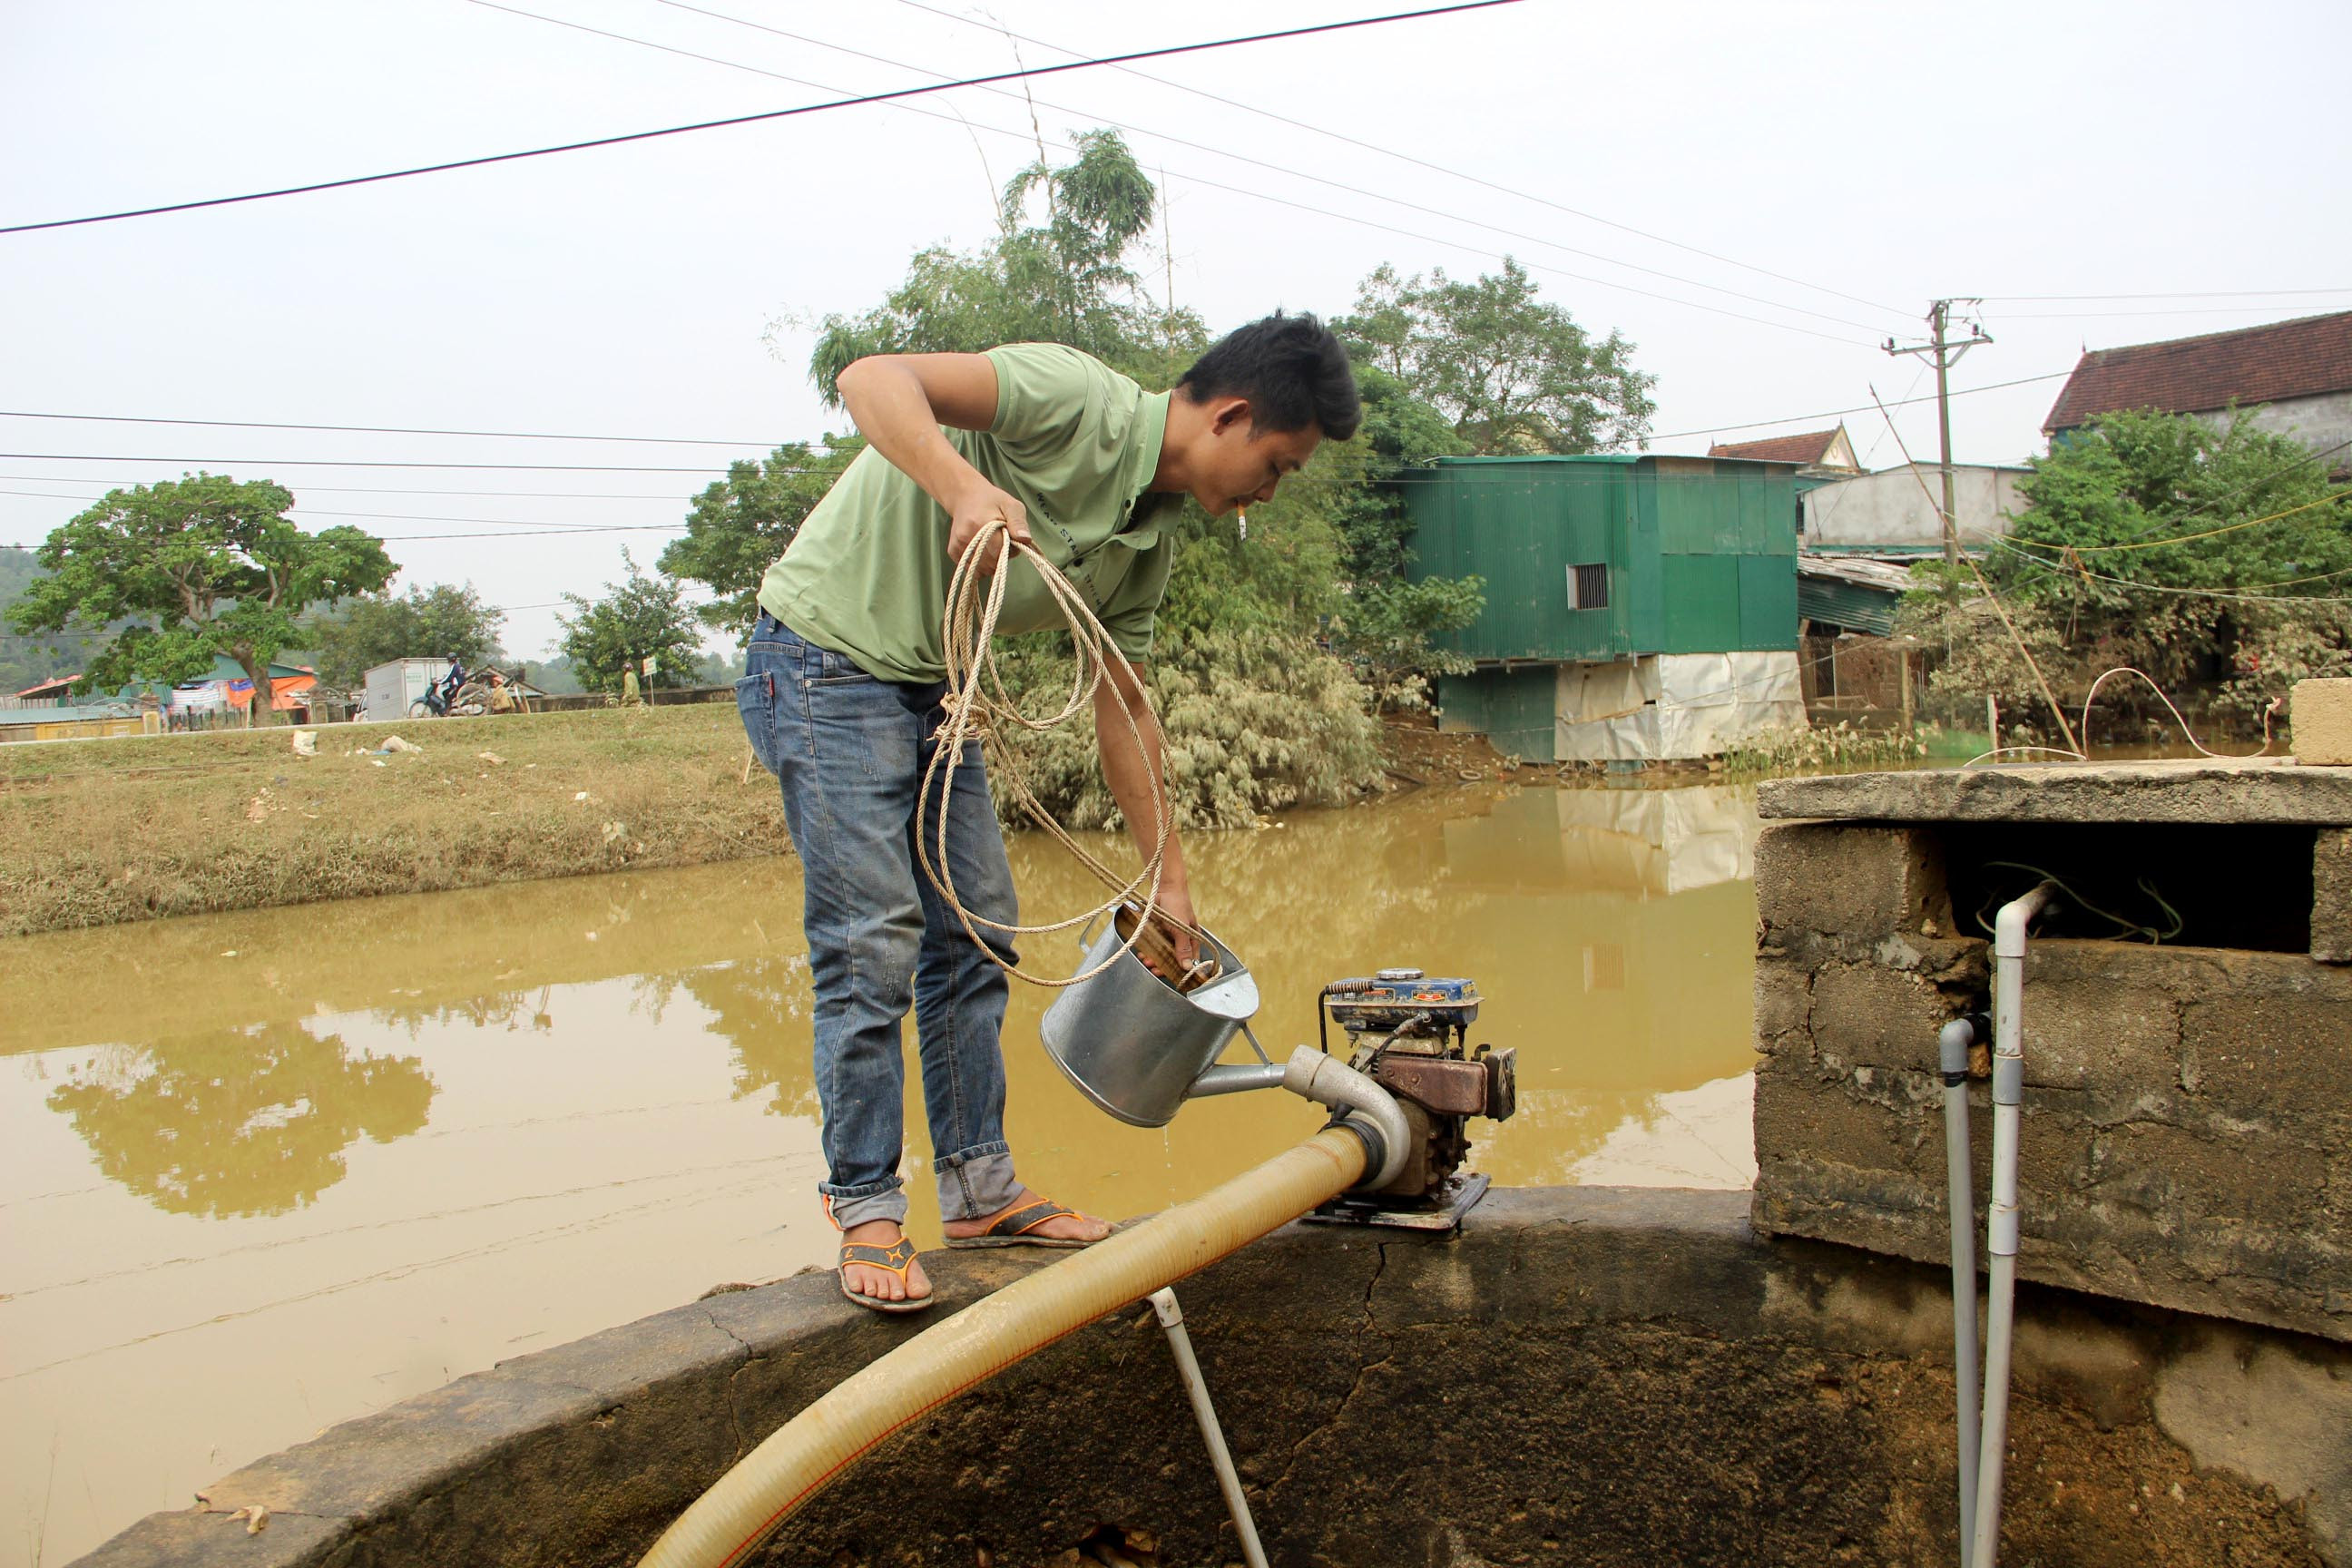 Anh hồ sỹ Văn cả tuần nay giúp các hộ dân trong xóm sử lý giếng nước vẫn không xuể. Ảnh: Quang An